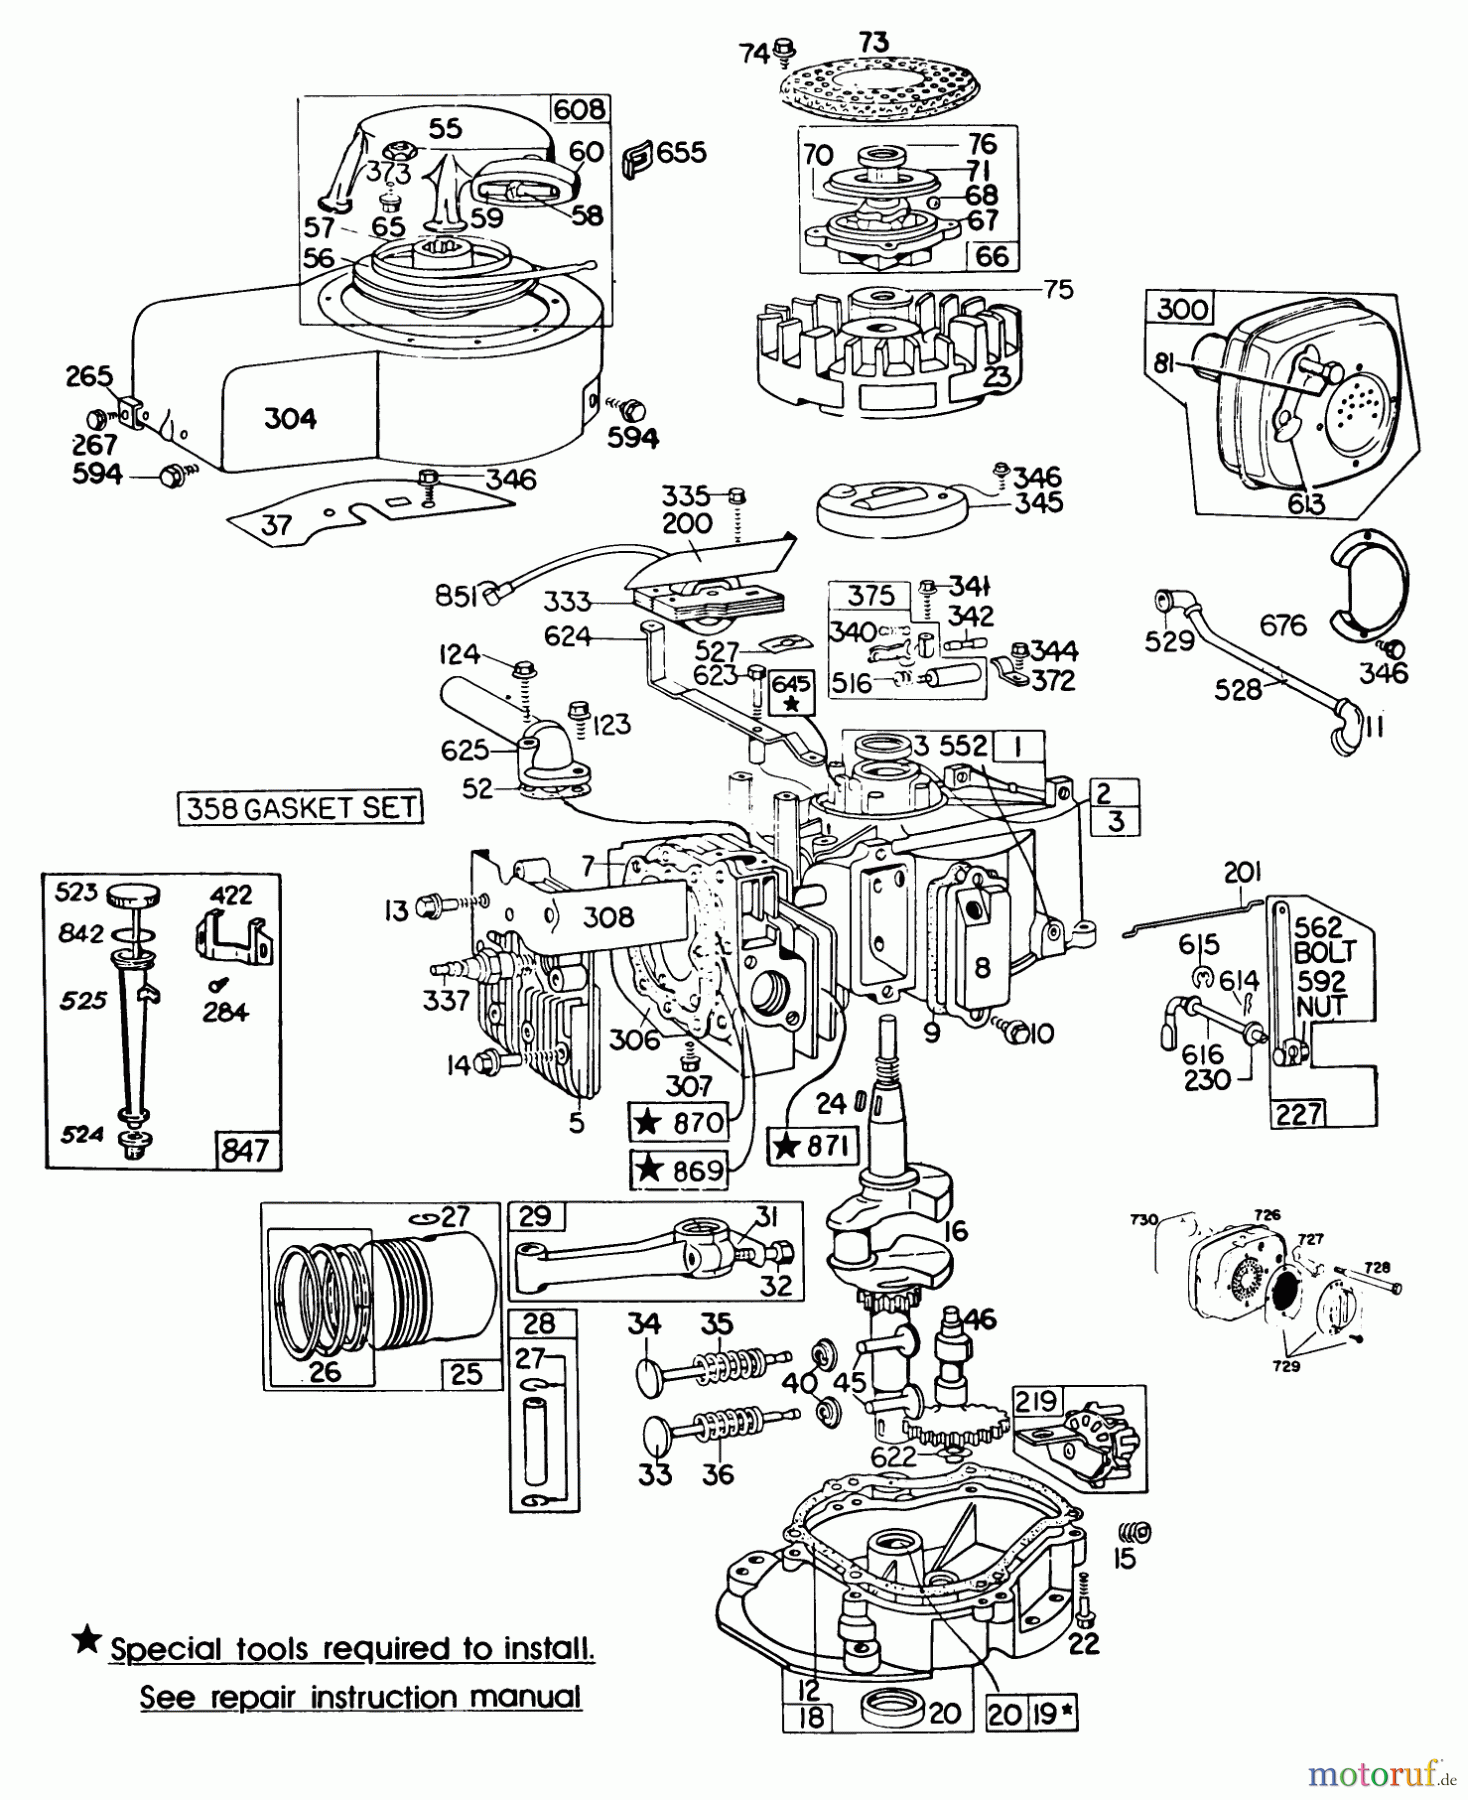  Toro Neu Mowers, Walk-Behind Seite 2 23022 - Toro Lawnmower, 1985 (5000001-5999999) ENGINE BRIGGS & STRATTON MODEL 130902-0543-01 #2